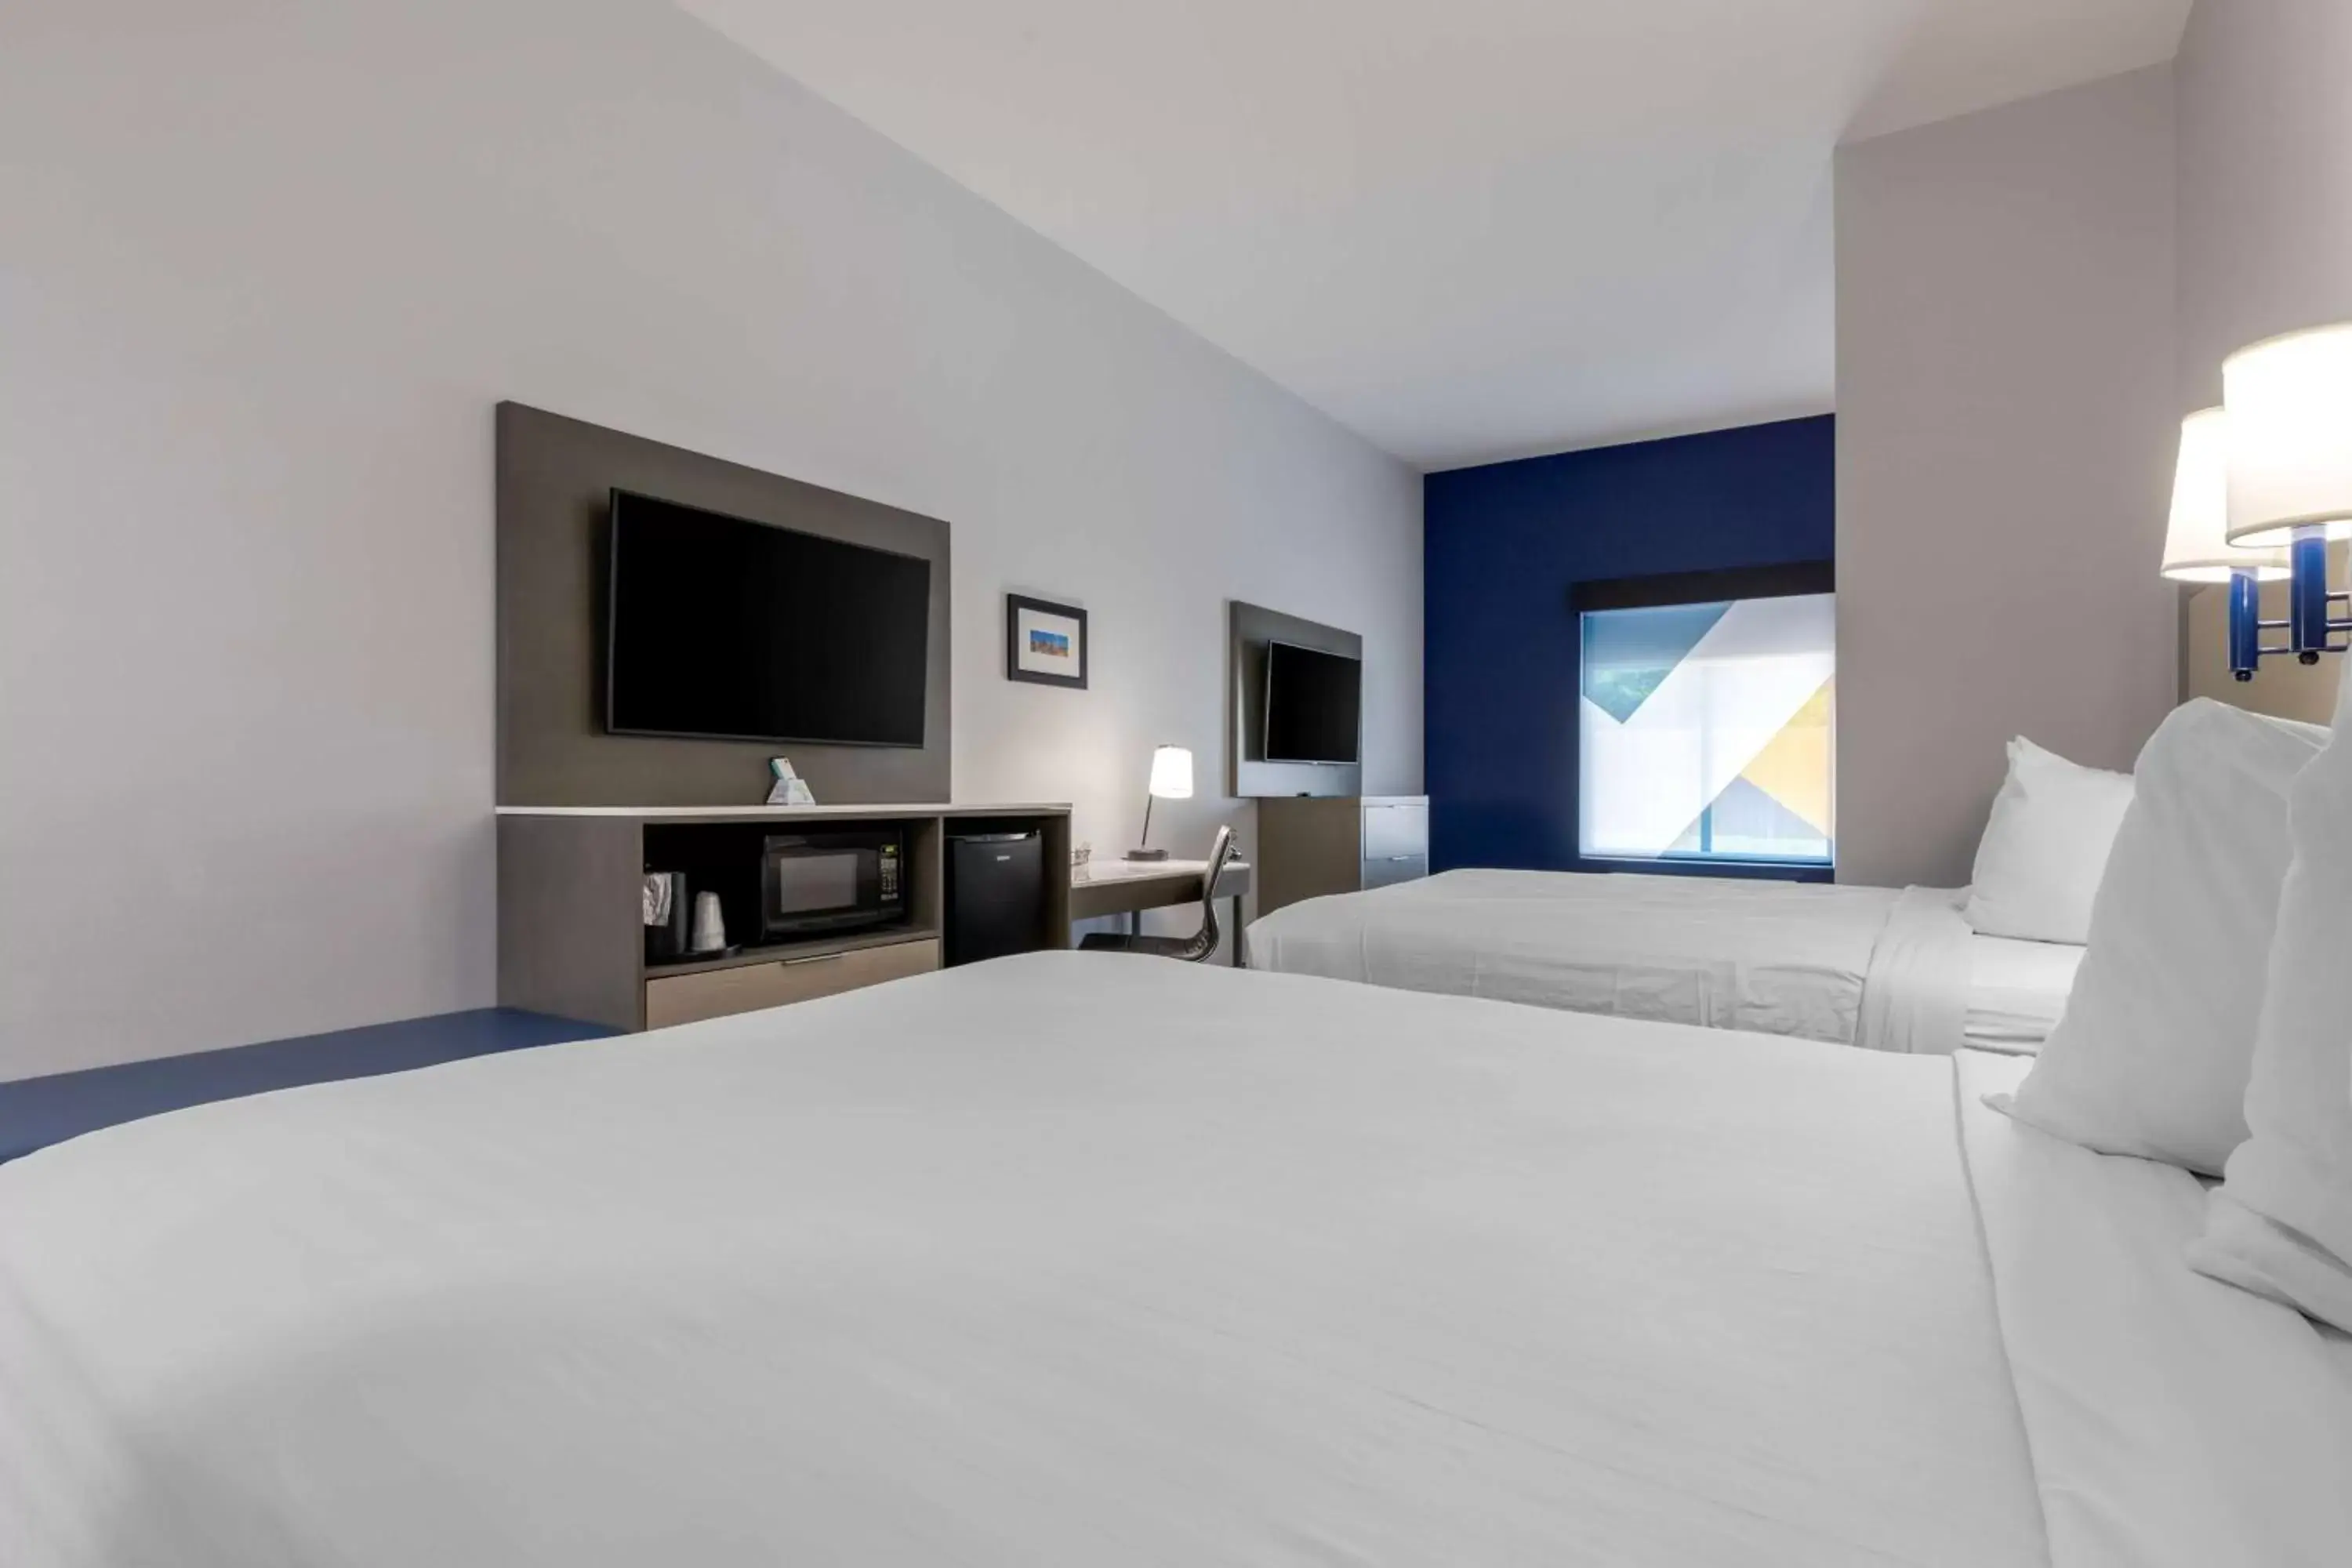 Bedroom, Bed in Best Western Plus Choctaw Inn & Suites